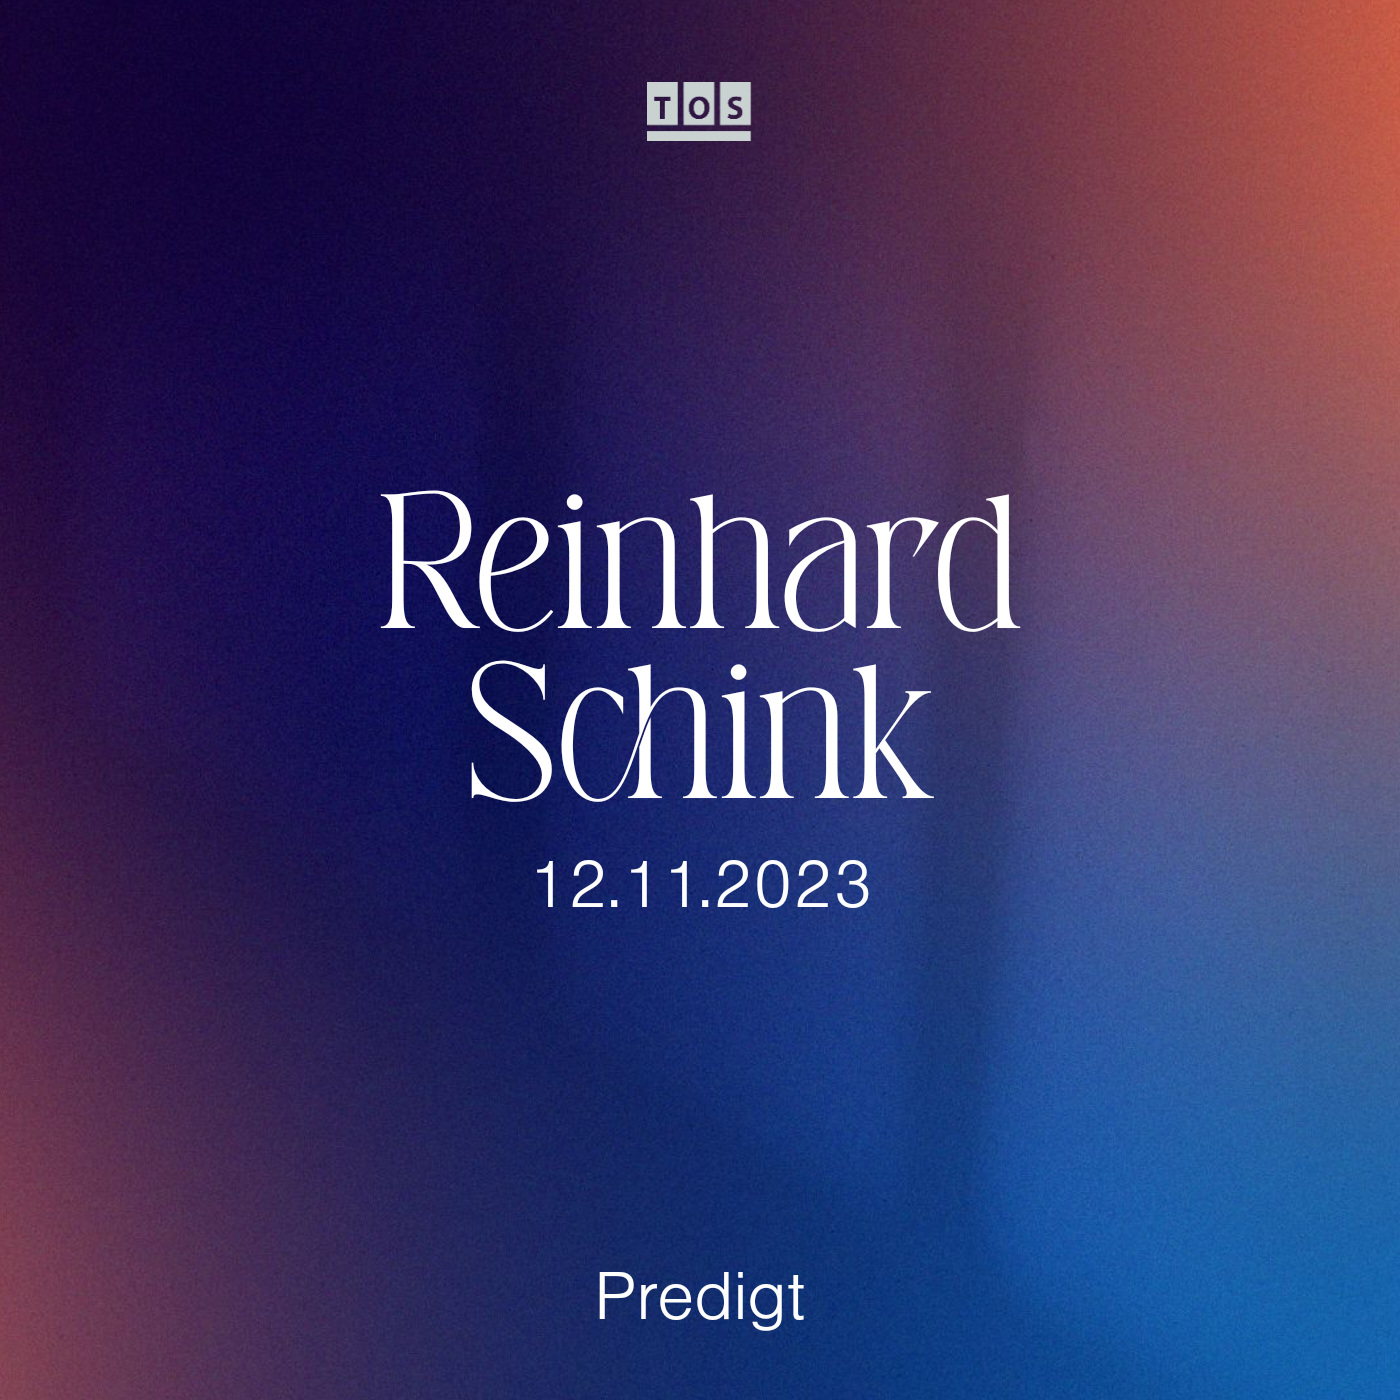 Reinhard Schink | 12.11.2023 hero artwork